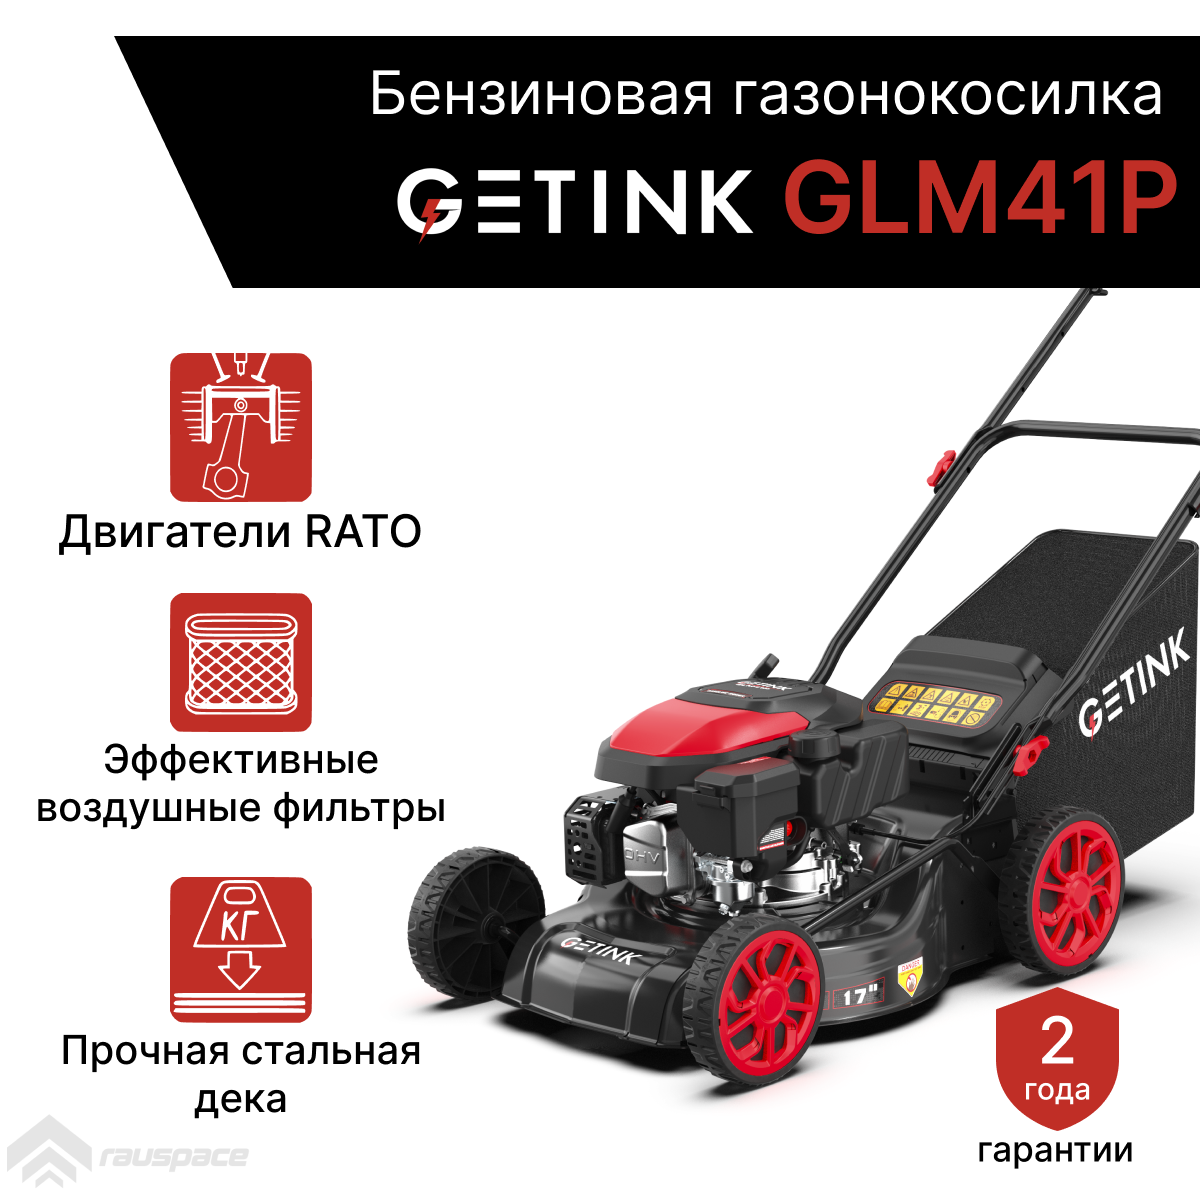 Бензиновая газонокосилка GETINK GLM41P